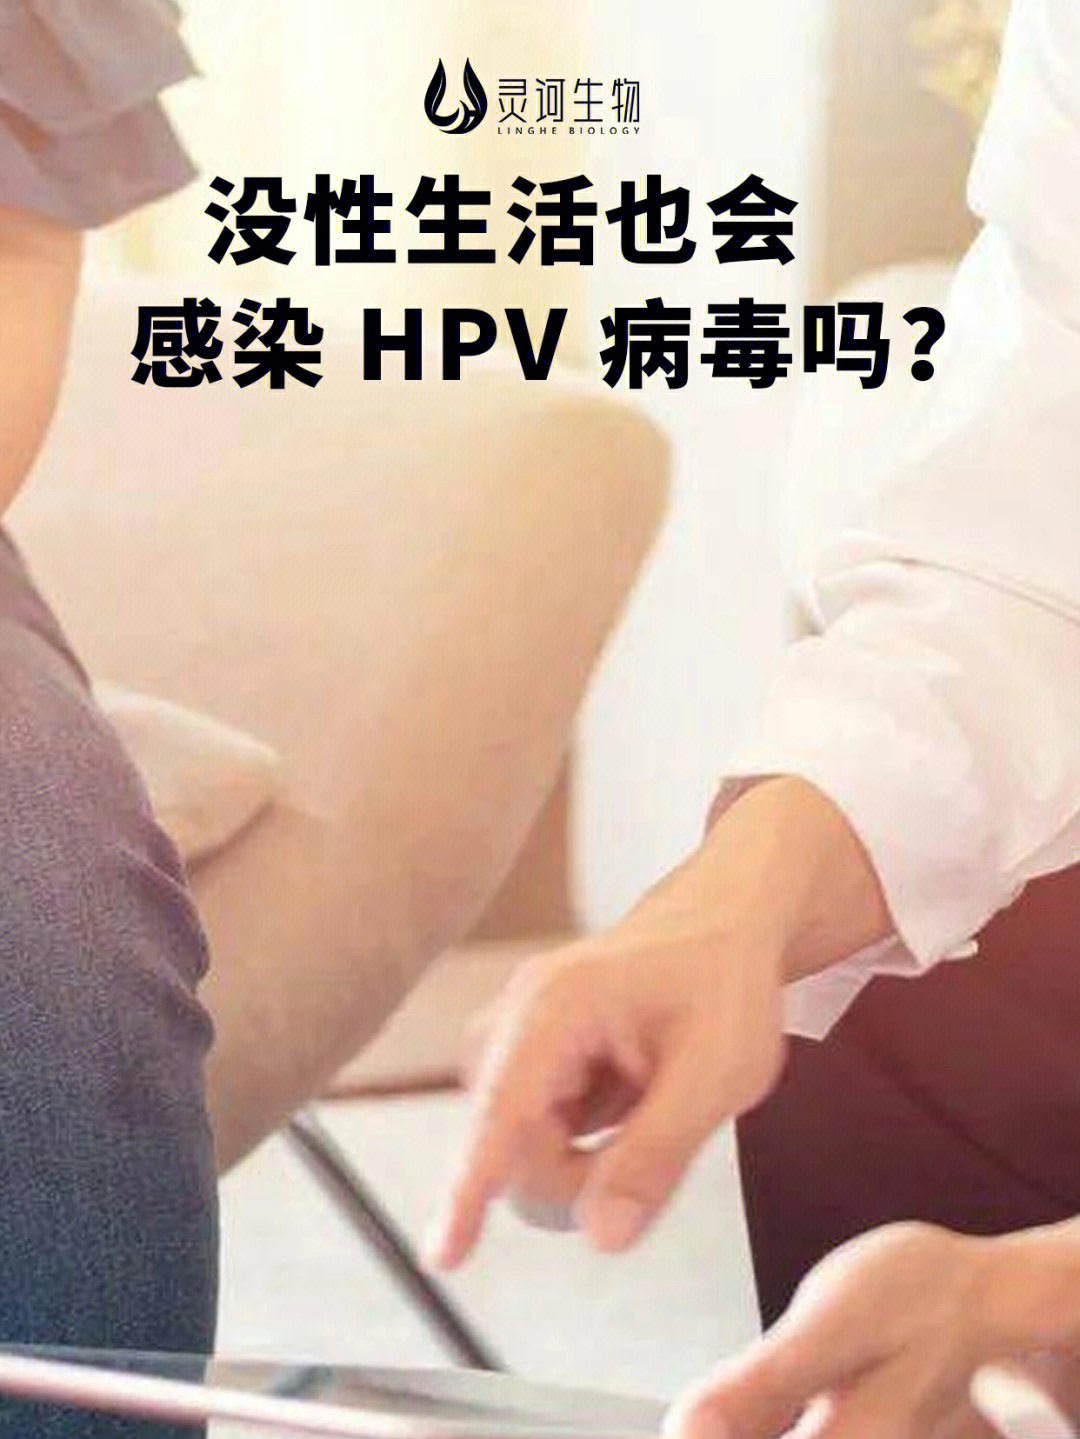 hpv病毒照片女性真人图片